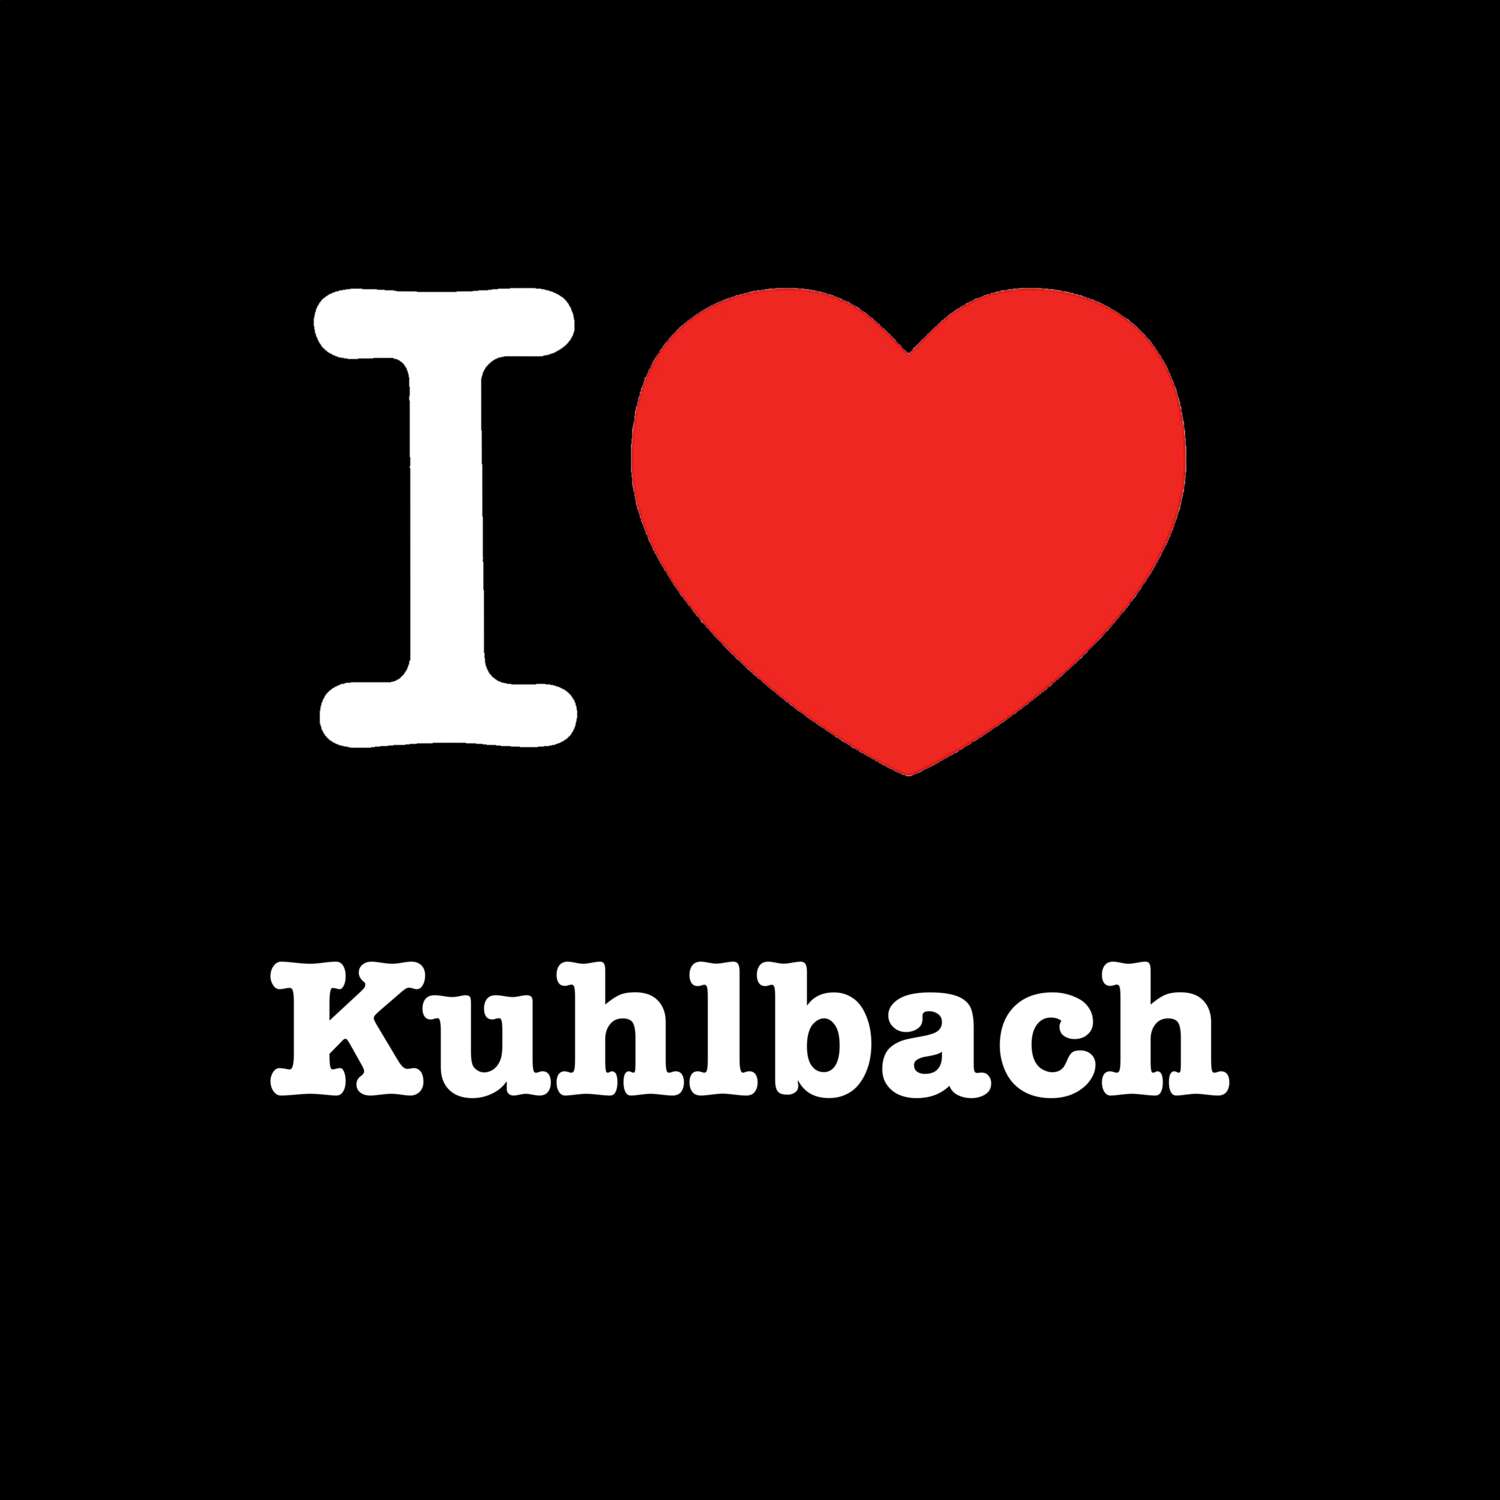 Kuhlbach T-Shirt »I love«